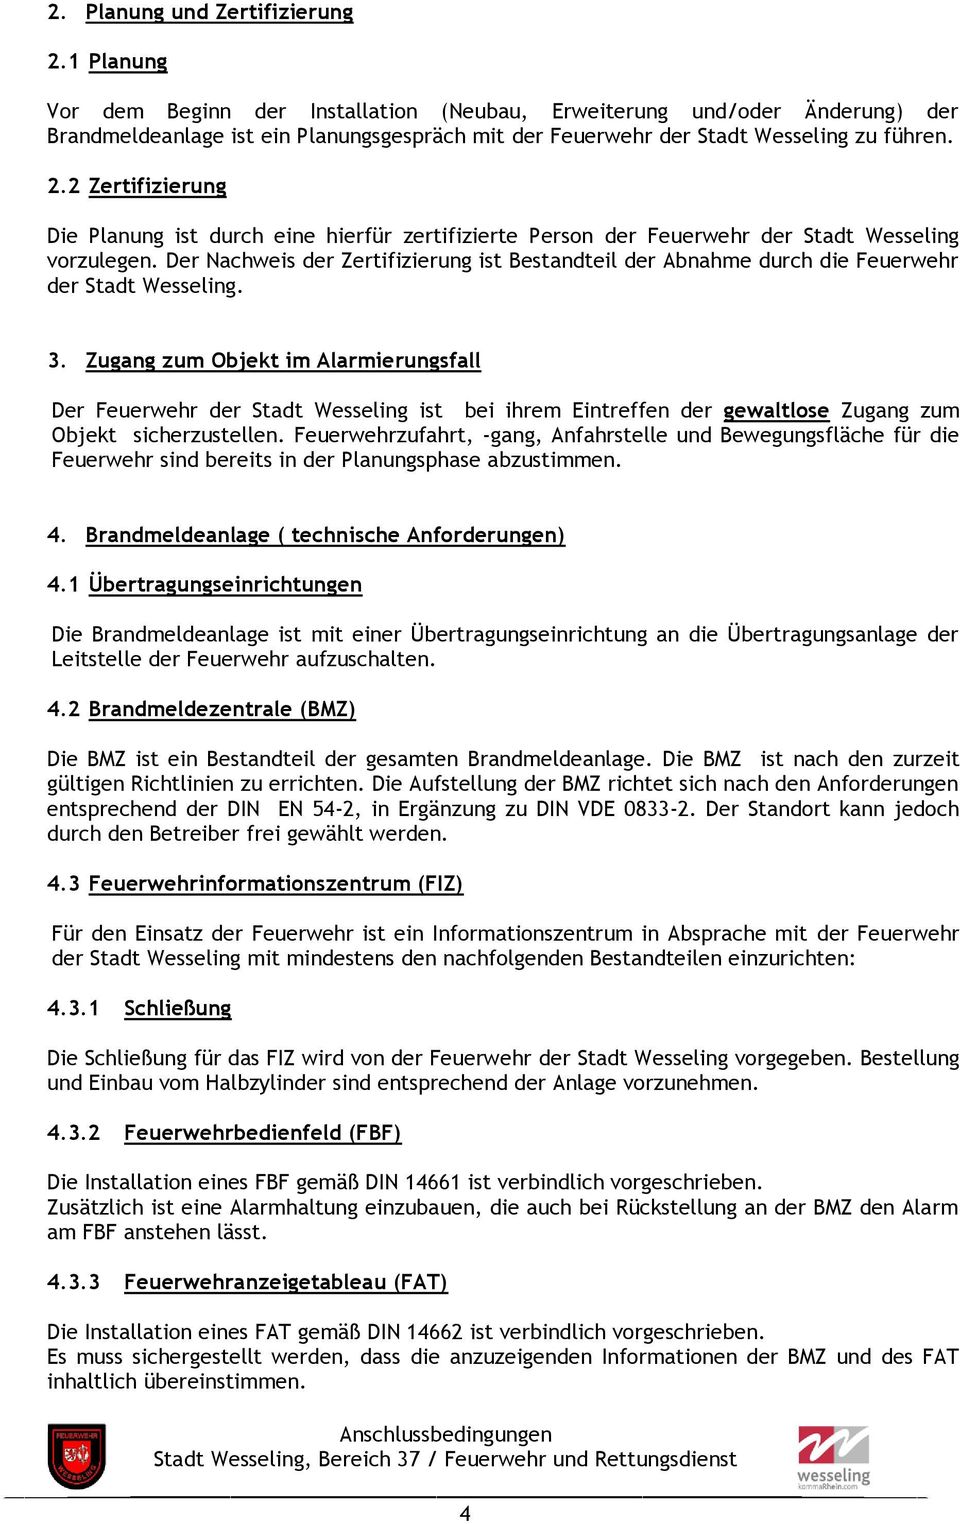 2 Zertifizierung Die Planung ist durch eine hierfür zertifizierte Person der Feuerwehr der Stadt Wesseling vorzulegen.